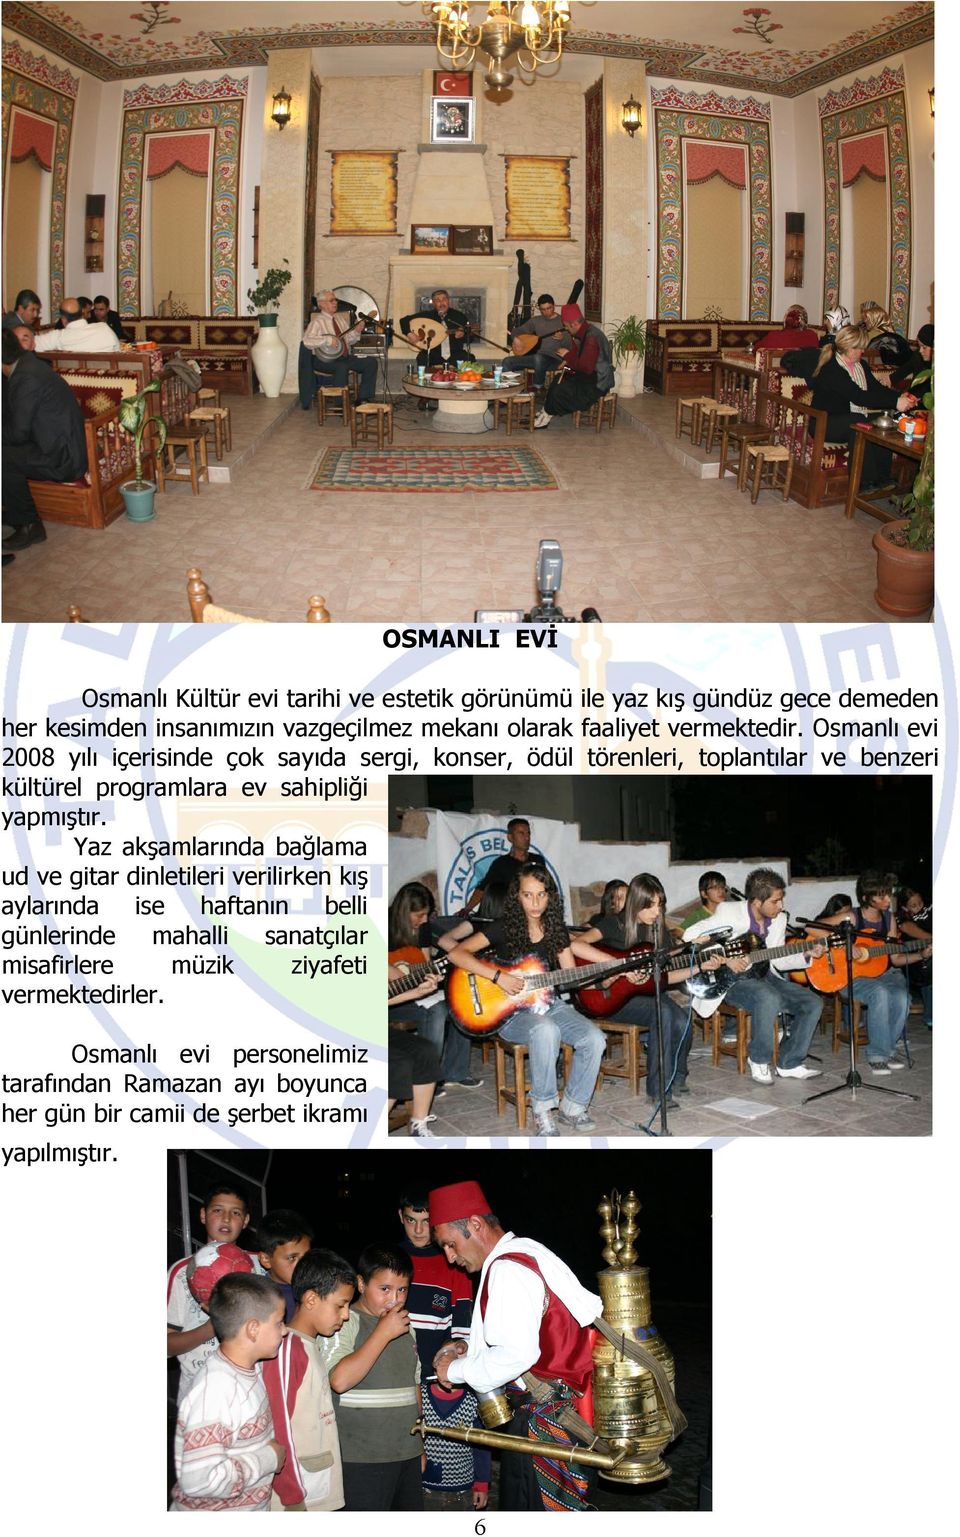 Osmanlı evi 2008 yılı içerisinde çok sayıda sergi, konser, ödül törenleri, toplantılar ve benzeri kültürel programlara ev sahipliği yapmıştır.